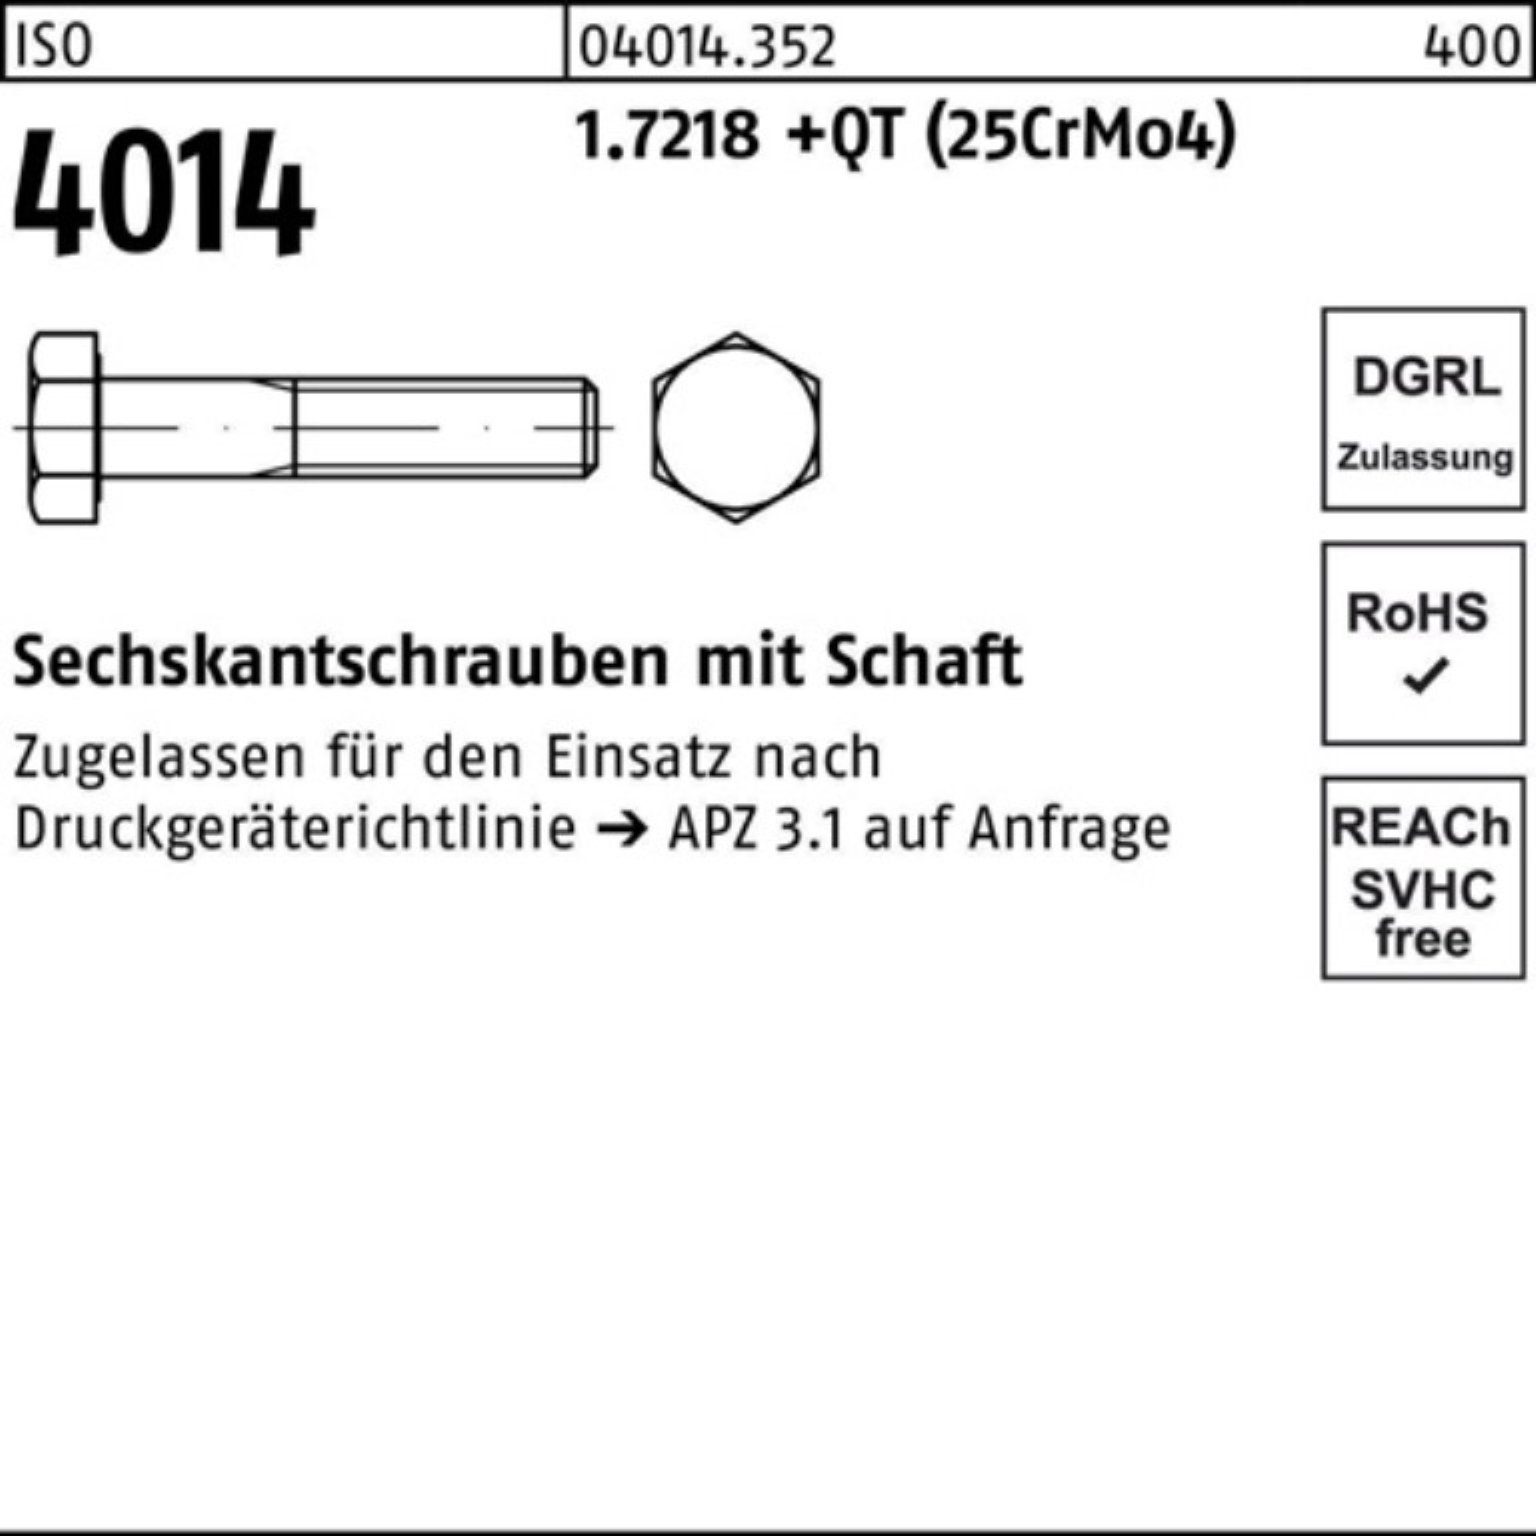 Pack Bufab M36x Schaft Sechskantschraube 100er 140 (25Cr 4014 1.7218 ISO Sechskantschraube +QT